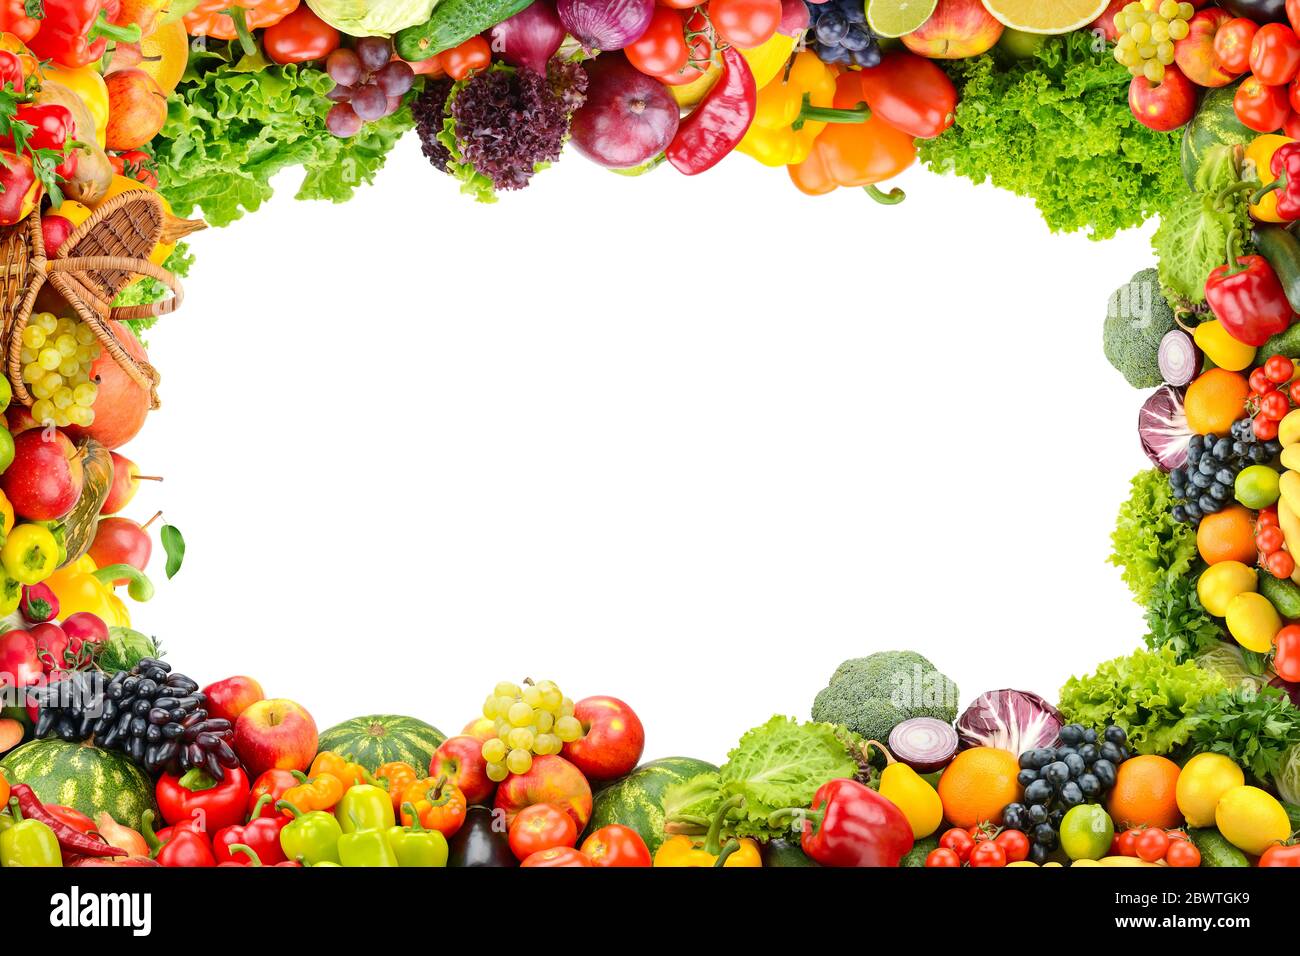 Collage verdure fresche e sane e frutta in forma cornice isolata su sfondo bianco. Spazio libero. Foto Stock